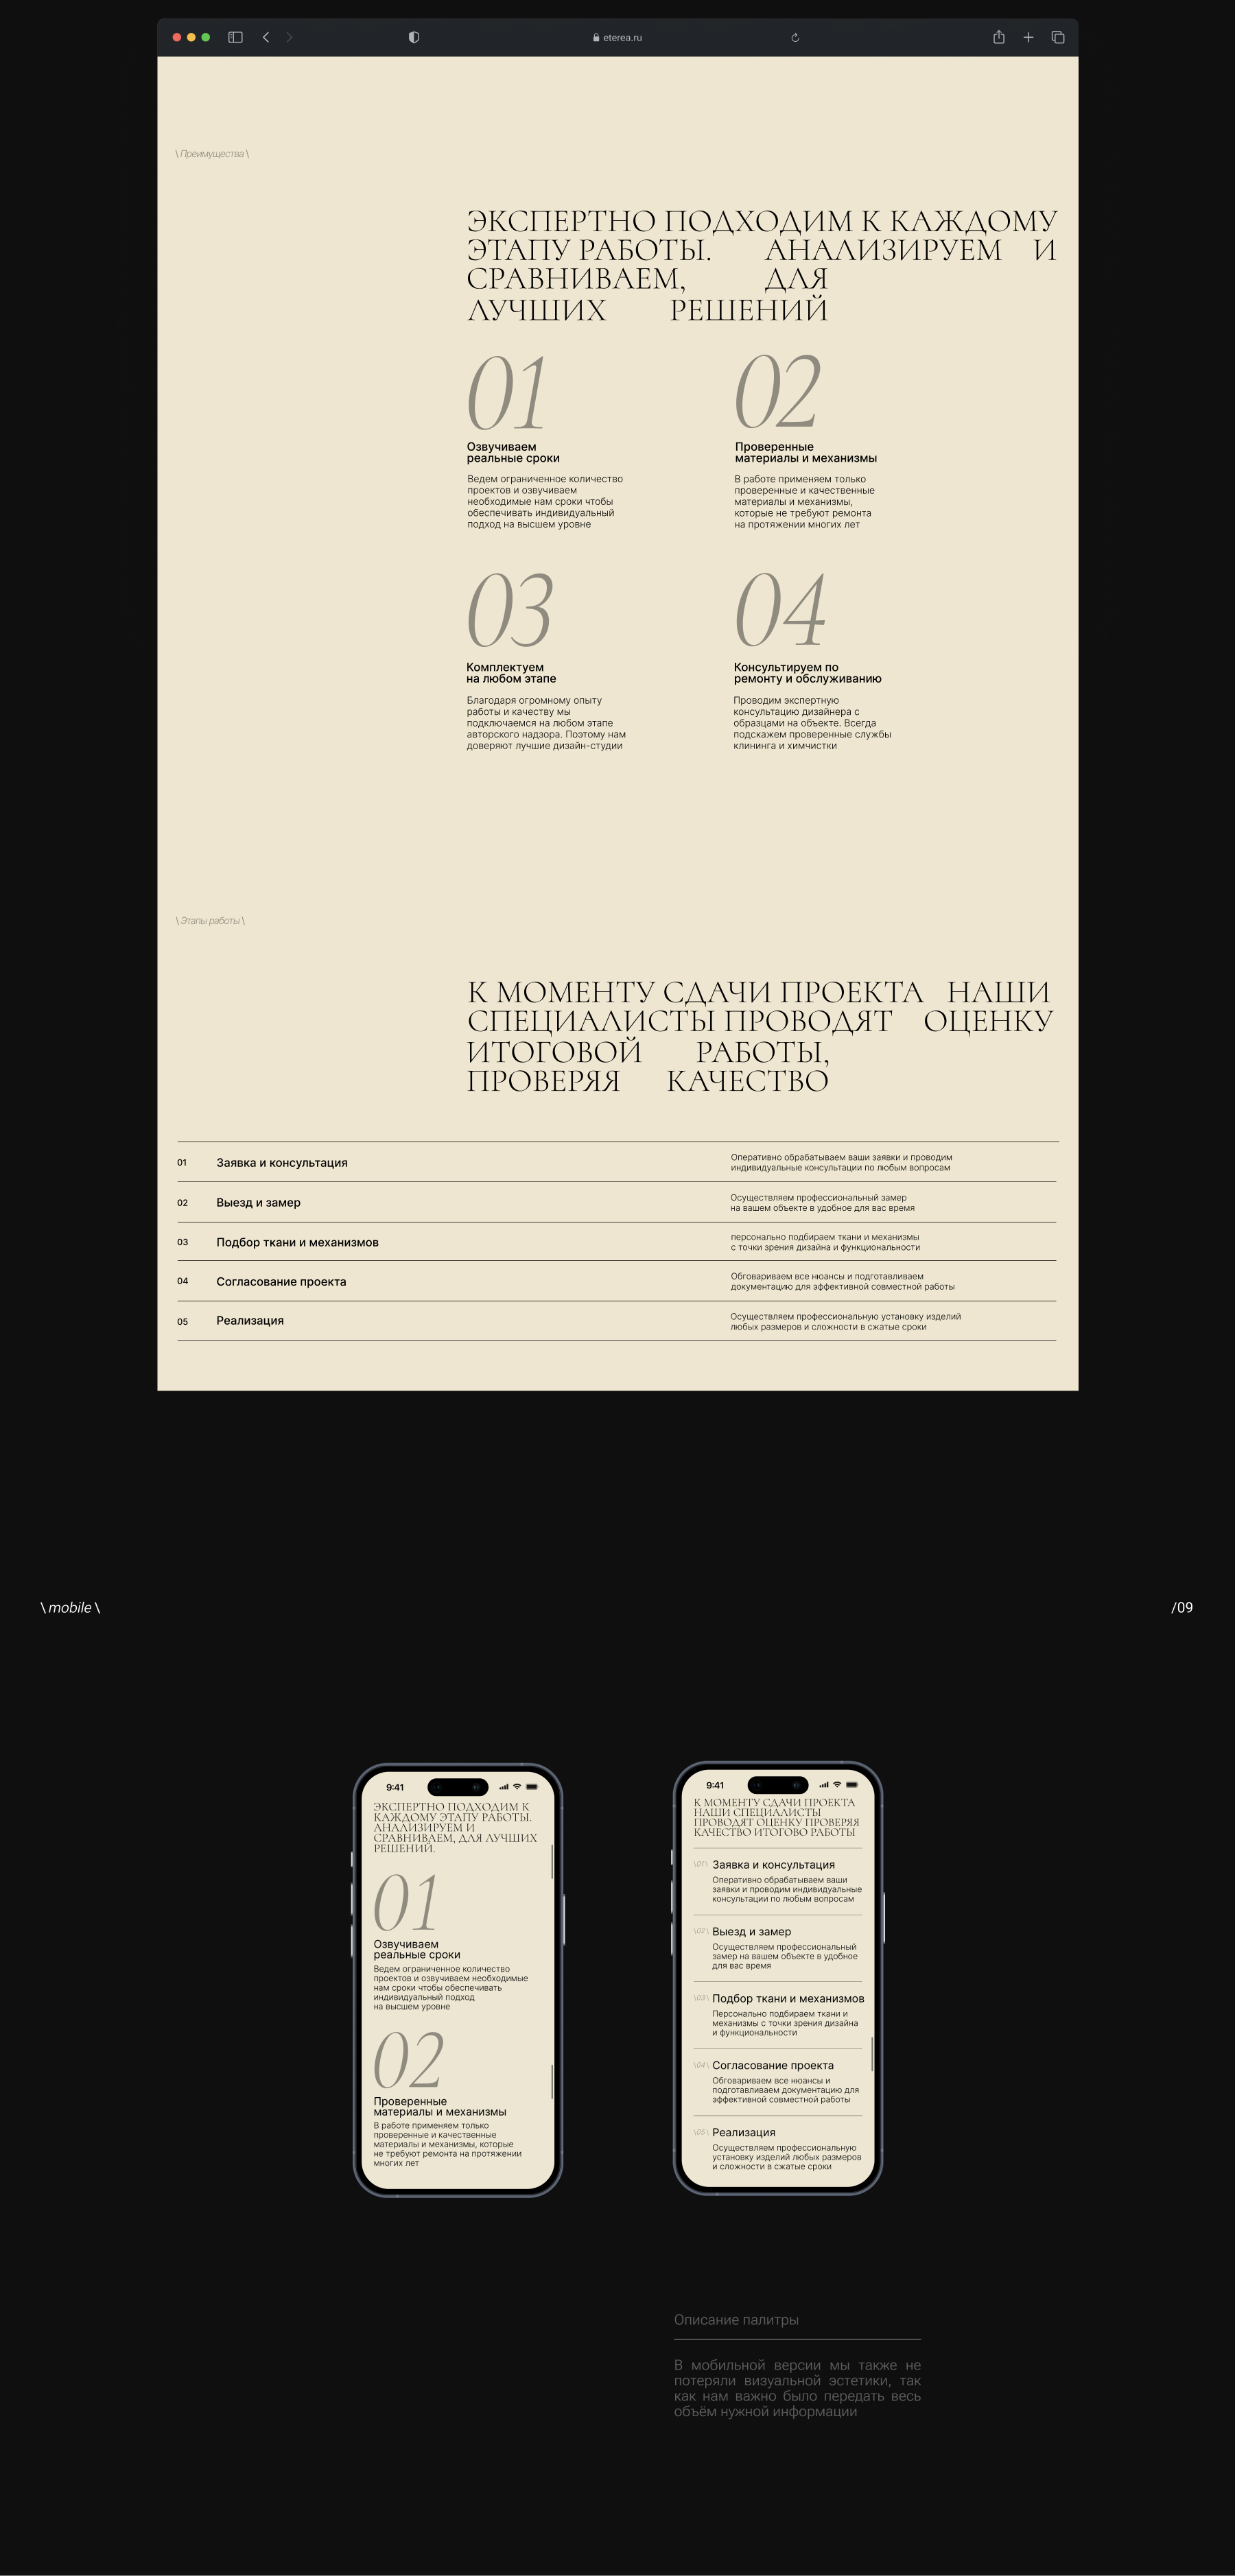 Eterea. Текстильный дизайн интерьера — Изображение №8 — Интерфейсы, Анимация на Dprofile